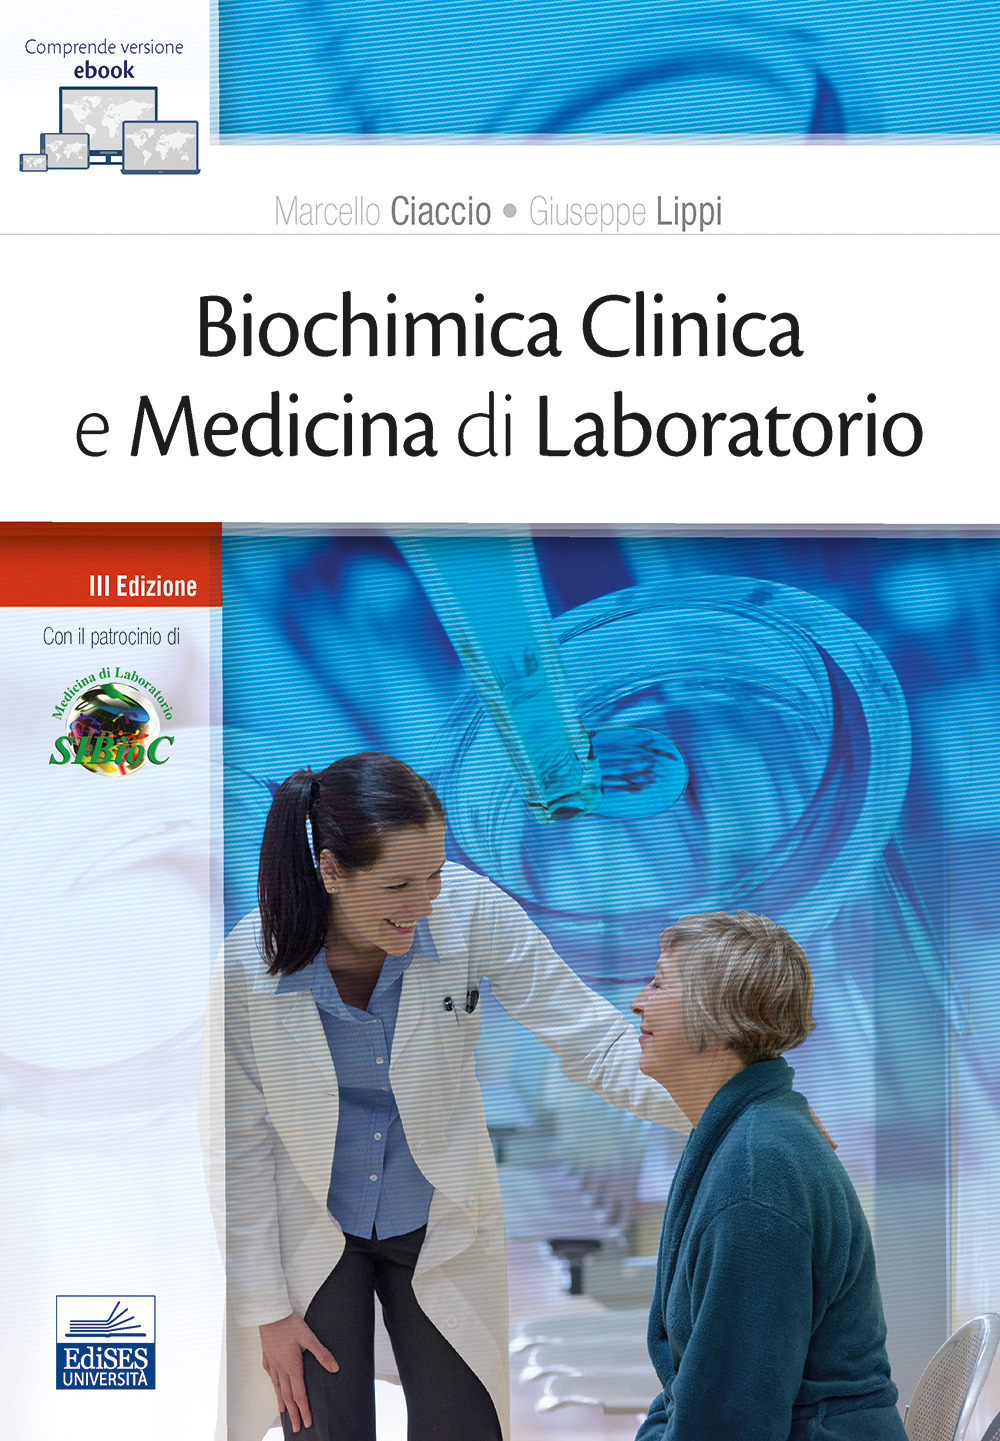 Image of Biochimica clinica e medicina di laboratorio